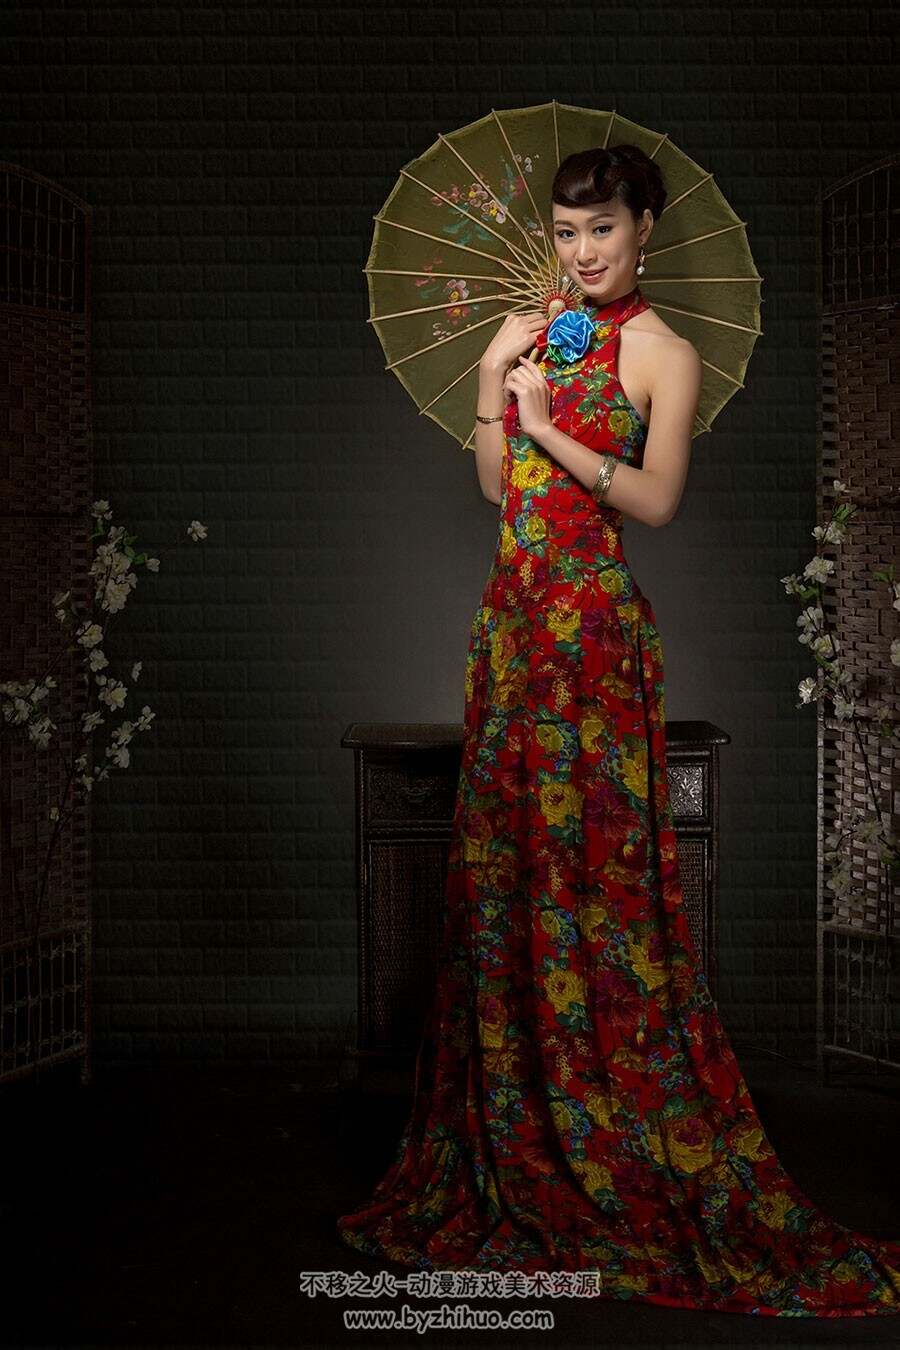 中式旗袍图集分享参考 1000P